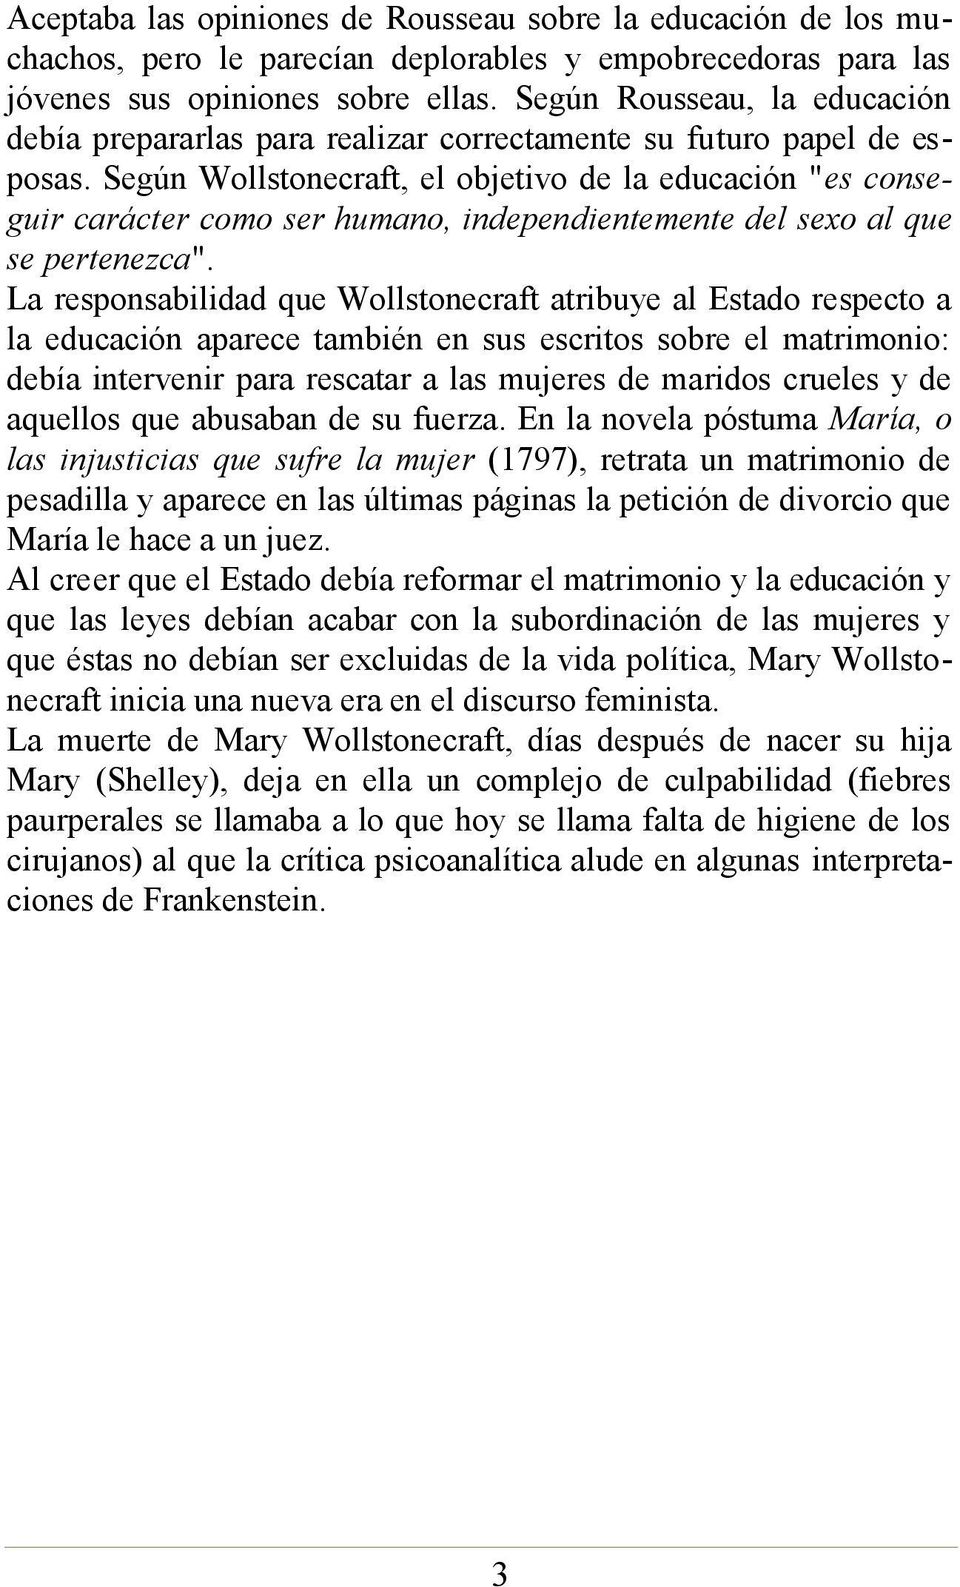 Según Wollstonecraft, el objetivo de la educación "es conseguir carácter como ser humano, independientemente del sexo al que se pertenezca".